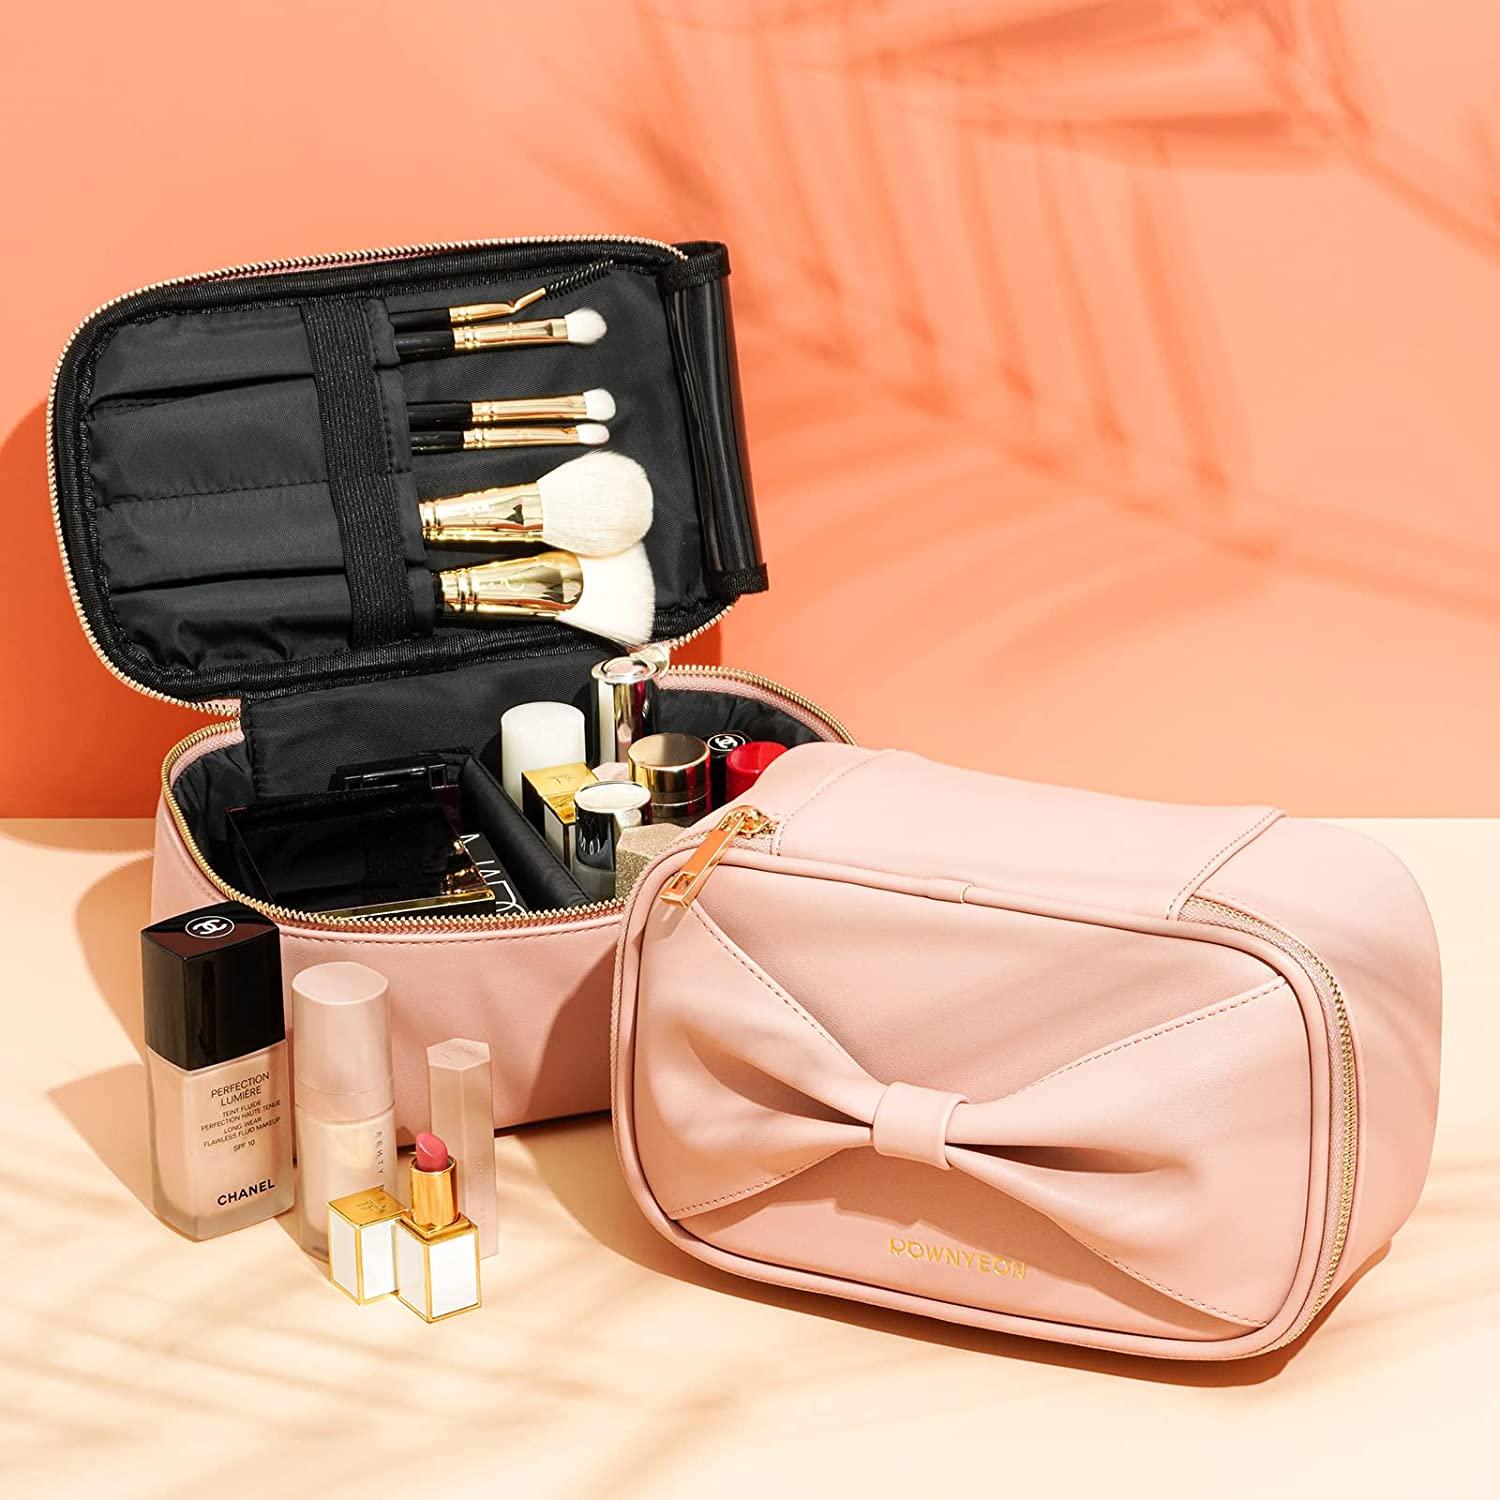 ROWNYEON Travel Makeup Bag Cute Organizer Bag Makeup Bag with